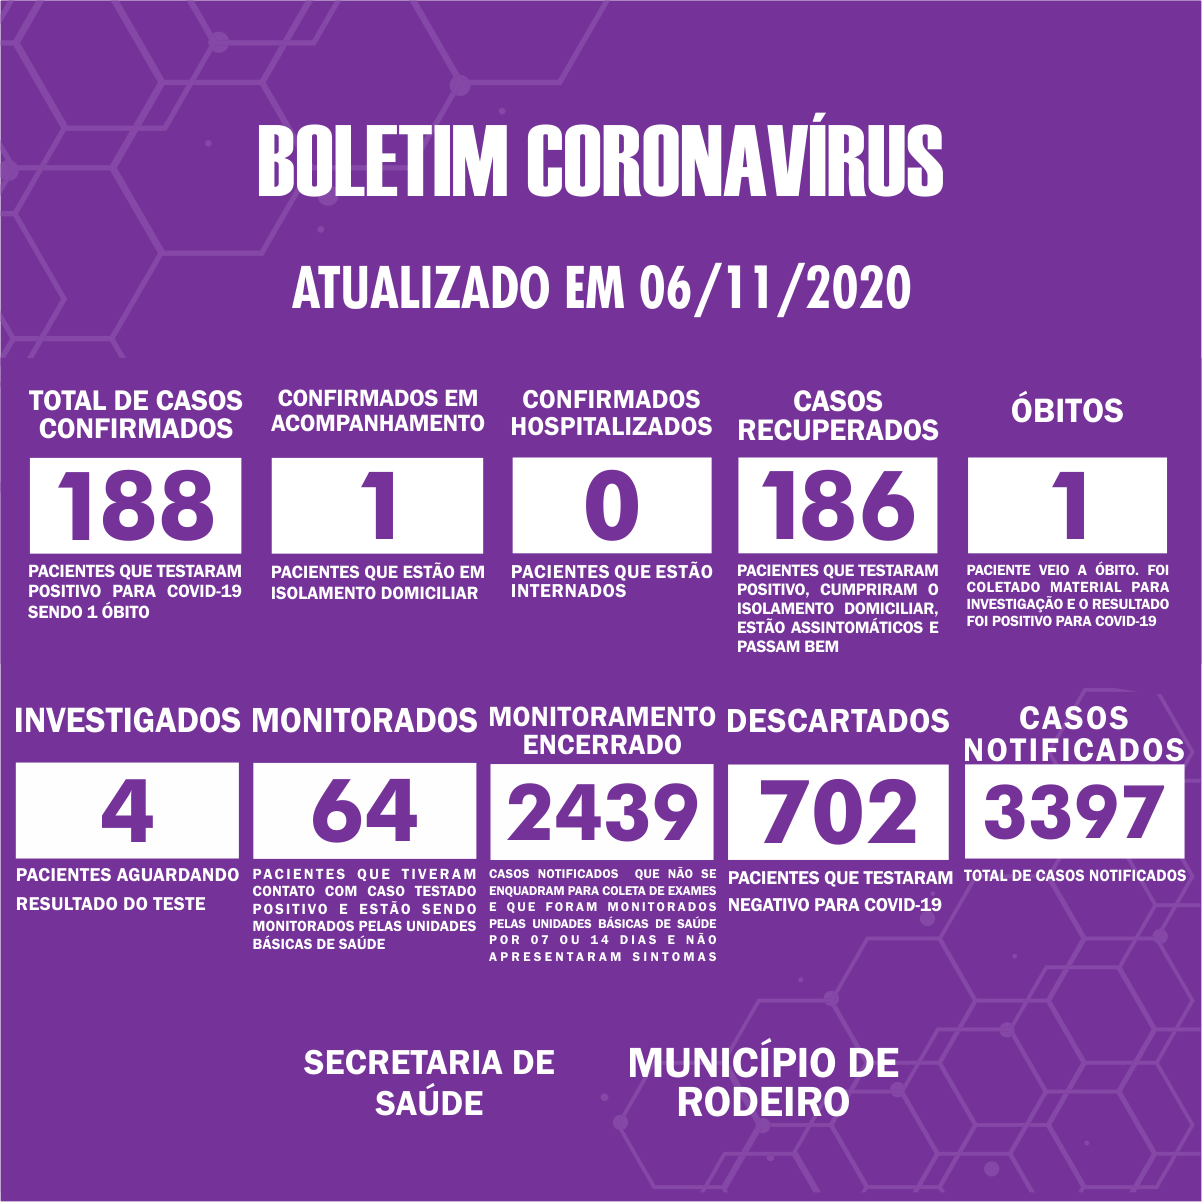 Boletim Epidemiológico do Município de Rodeiro sobre coronavírus, atualizado em 06/11/2020